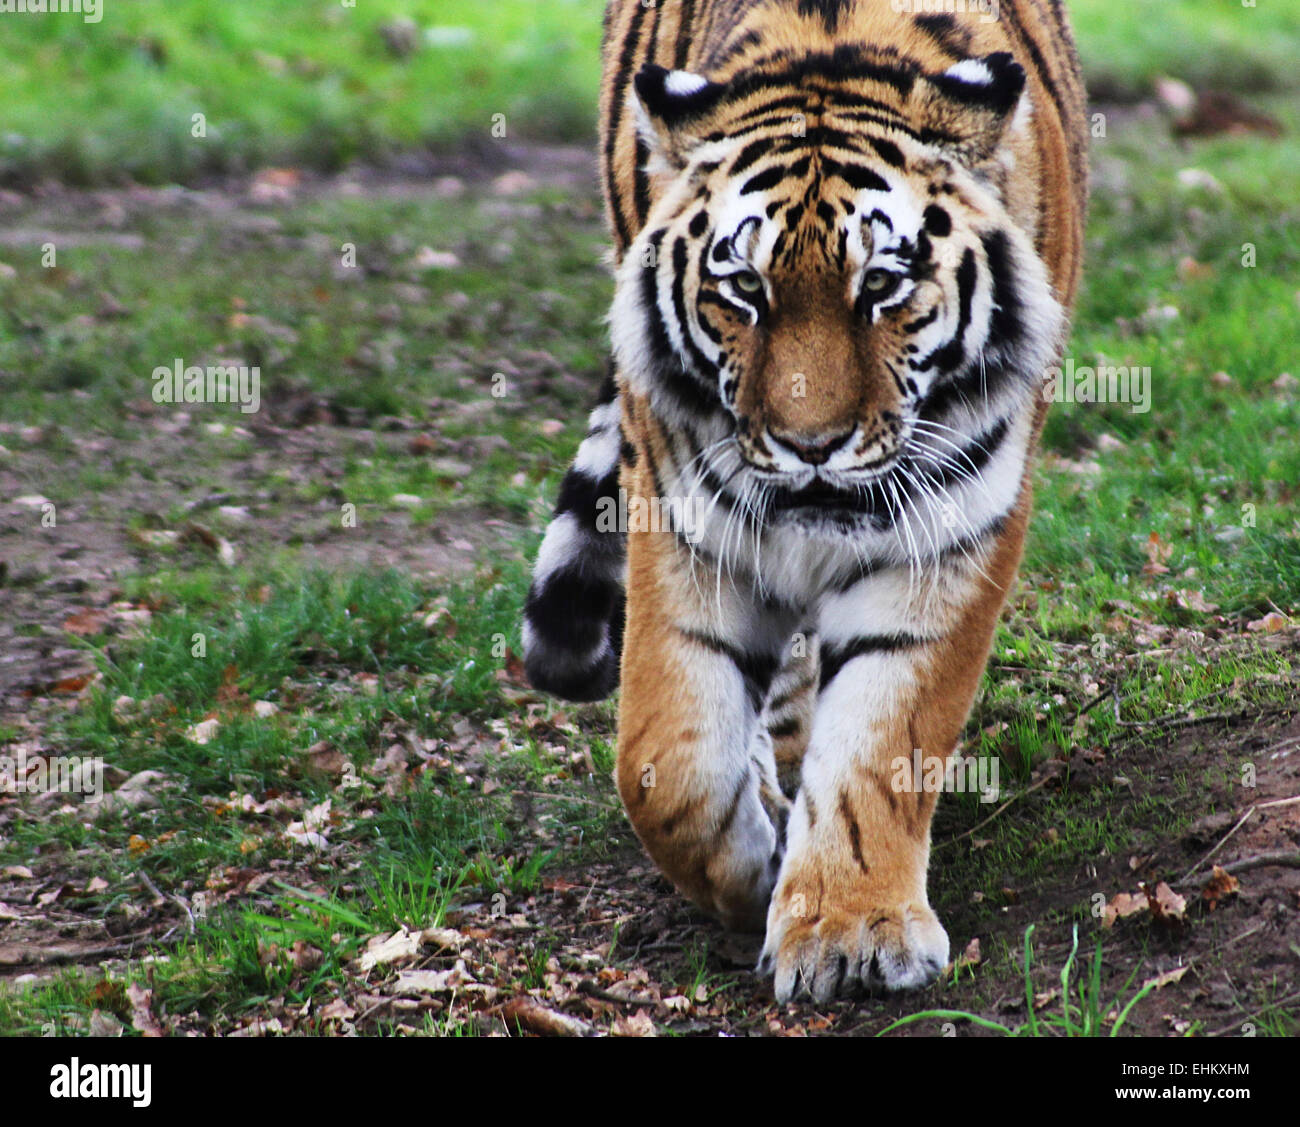 Tiger stalking his enclosure at a local zoo. Stock Photo